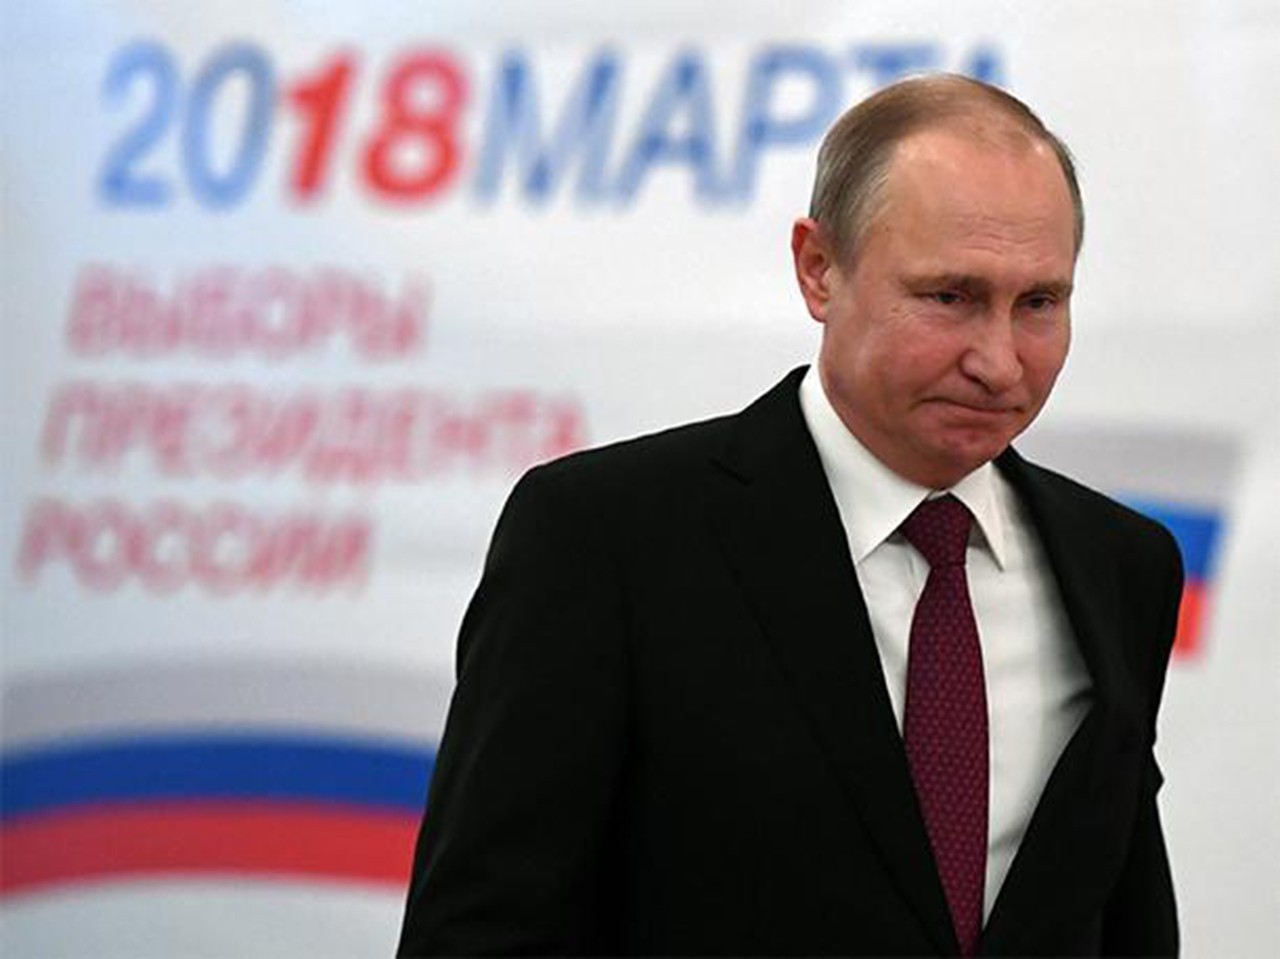 Putin es reelegido con cerca del 72 % de los votos, según primeros resultados